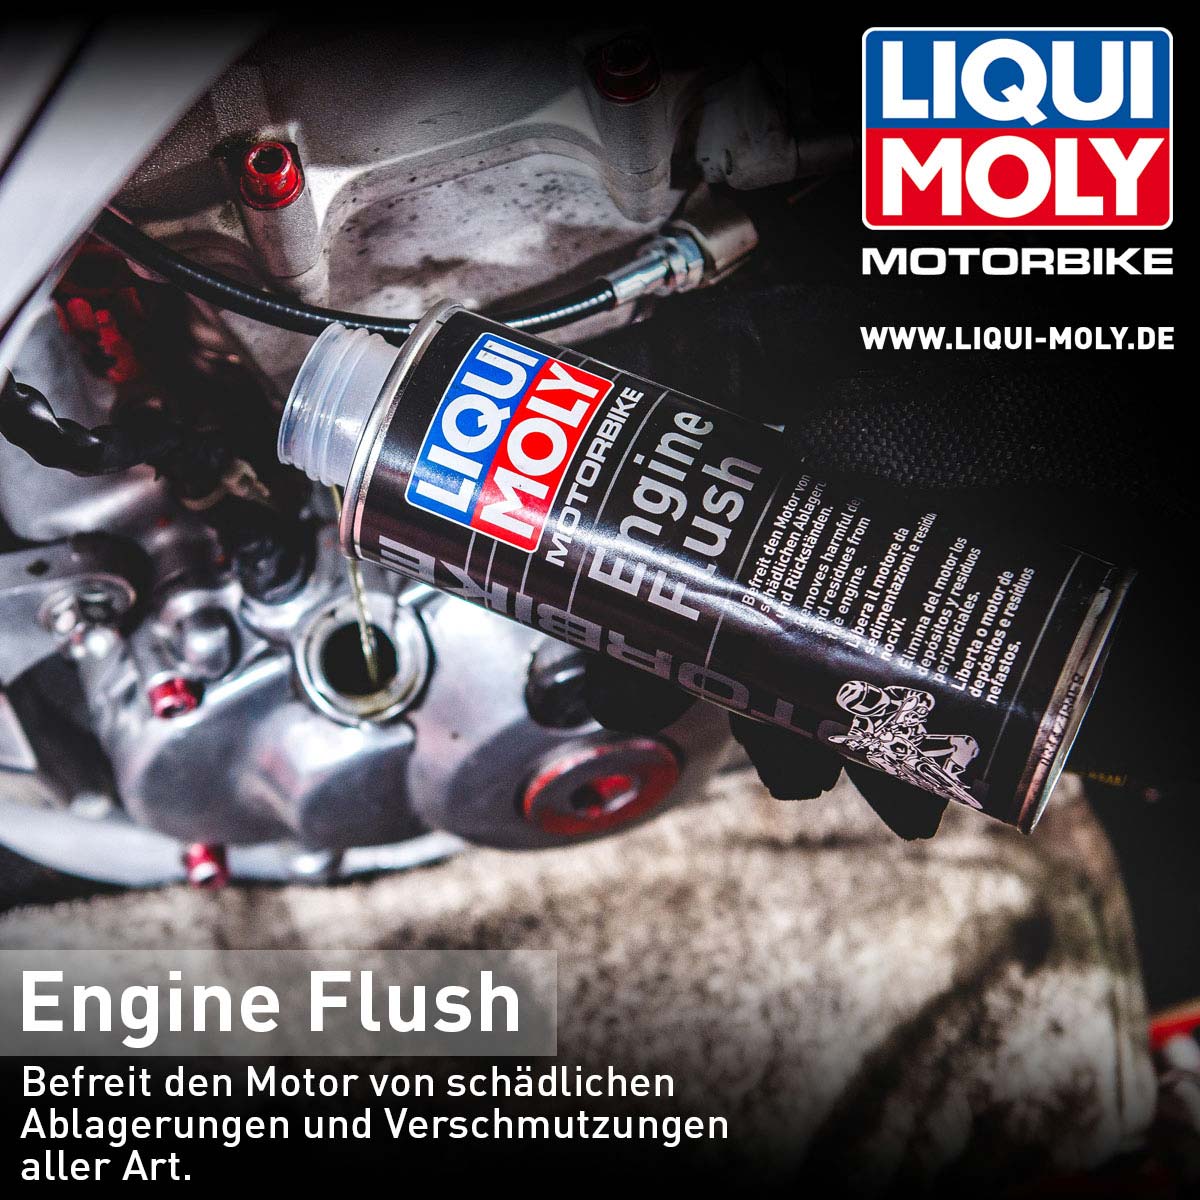 [Translate to Englisch:] LIQUI MOLY Engine Flush